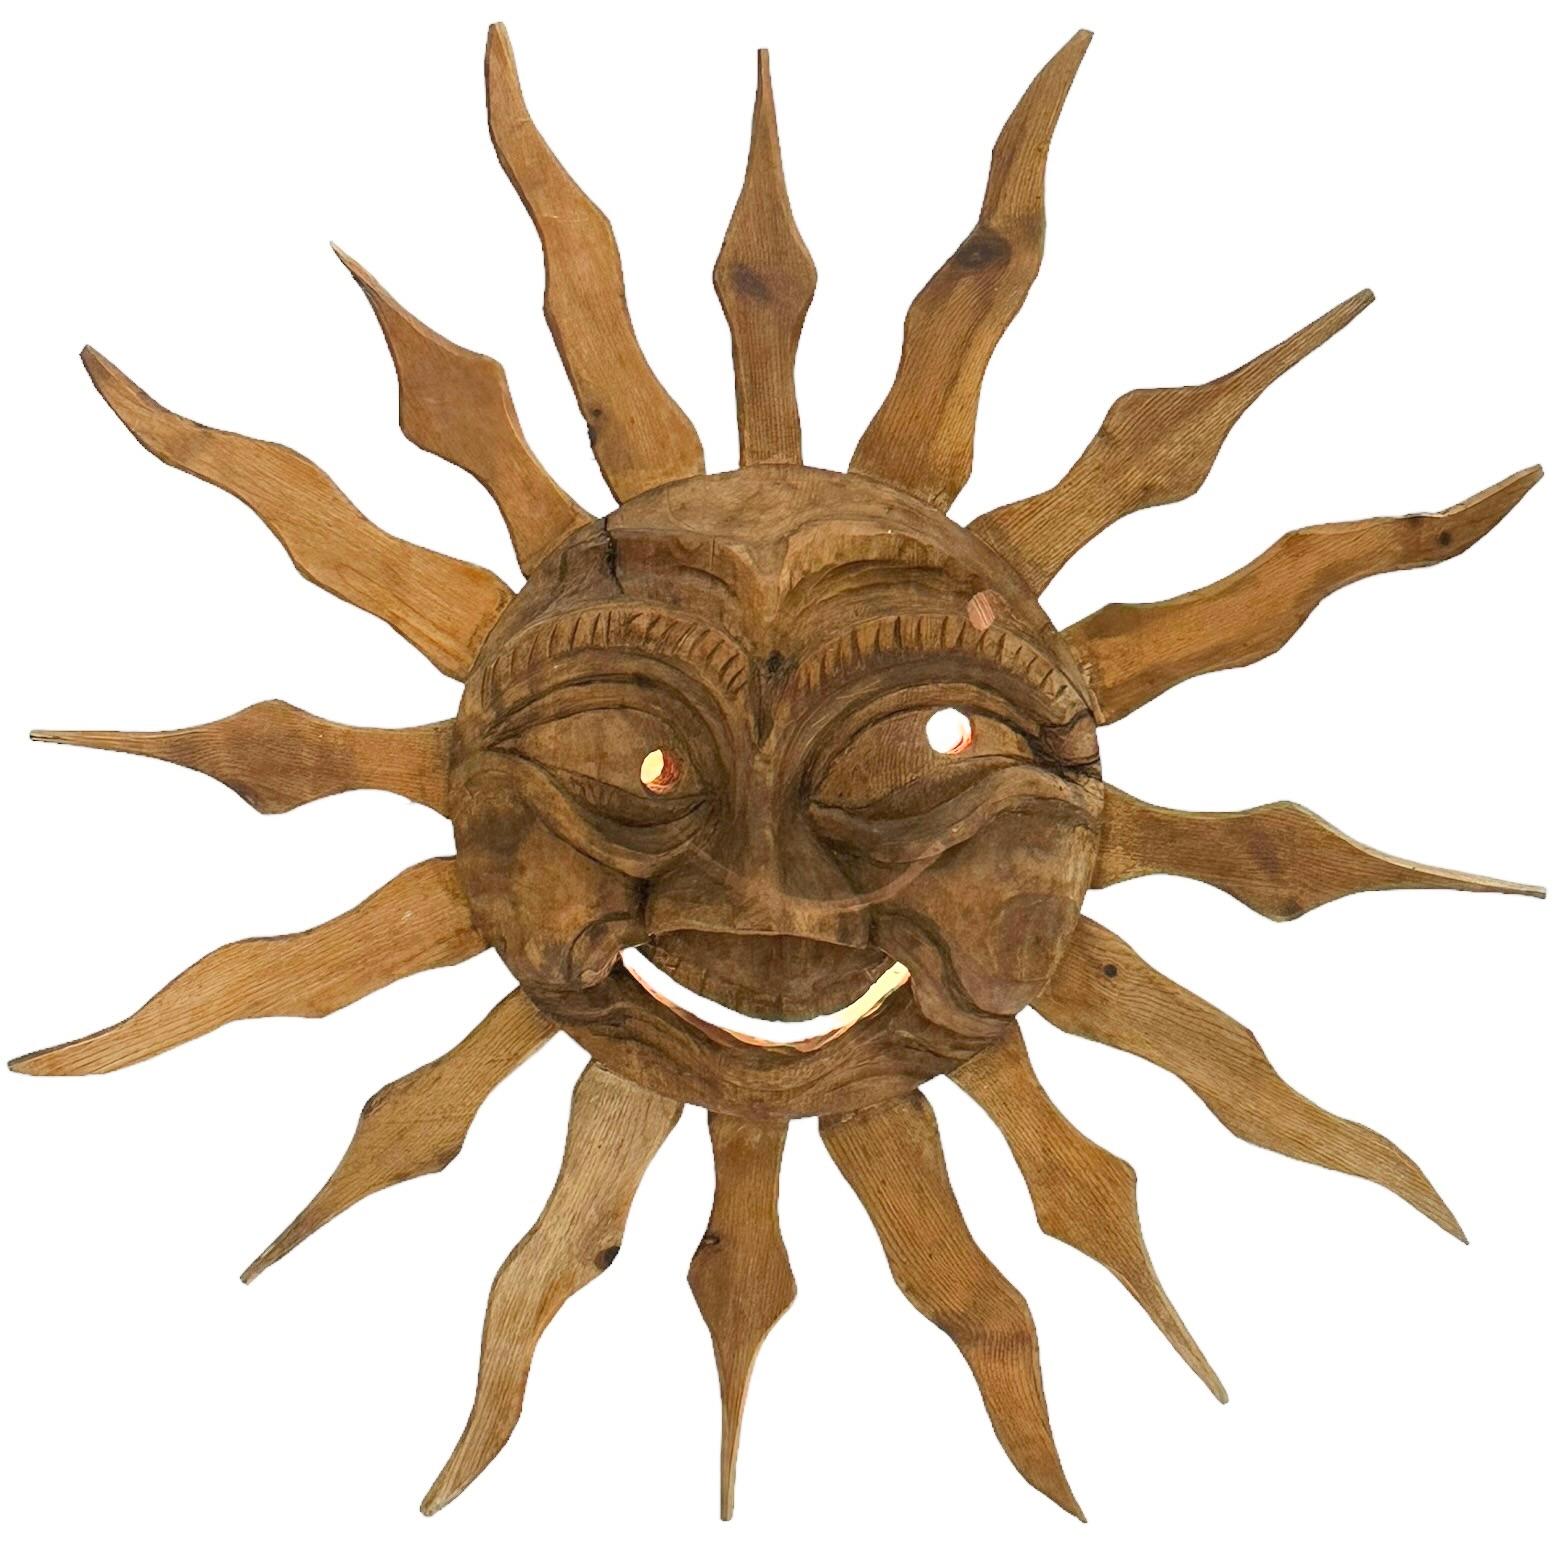 Schöne hölzerne handgefertigte Sun Face Wall Light Sculpture. Hergestellt in Deutschland von einem Holzarbeiter in den 1900er bis 1920er Jahren. In den 1950er Jahren wurde sie durch eine Wandleuchte ersetzt. Wunderschöne detaillierte Schnitzerei